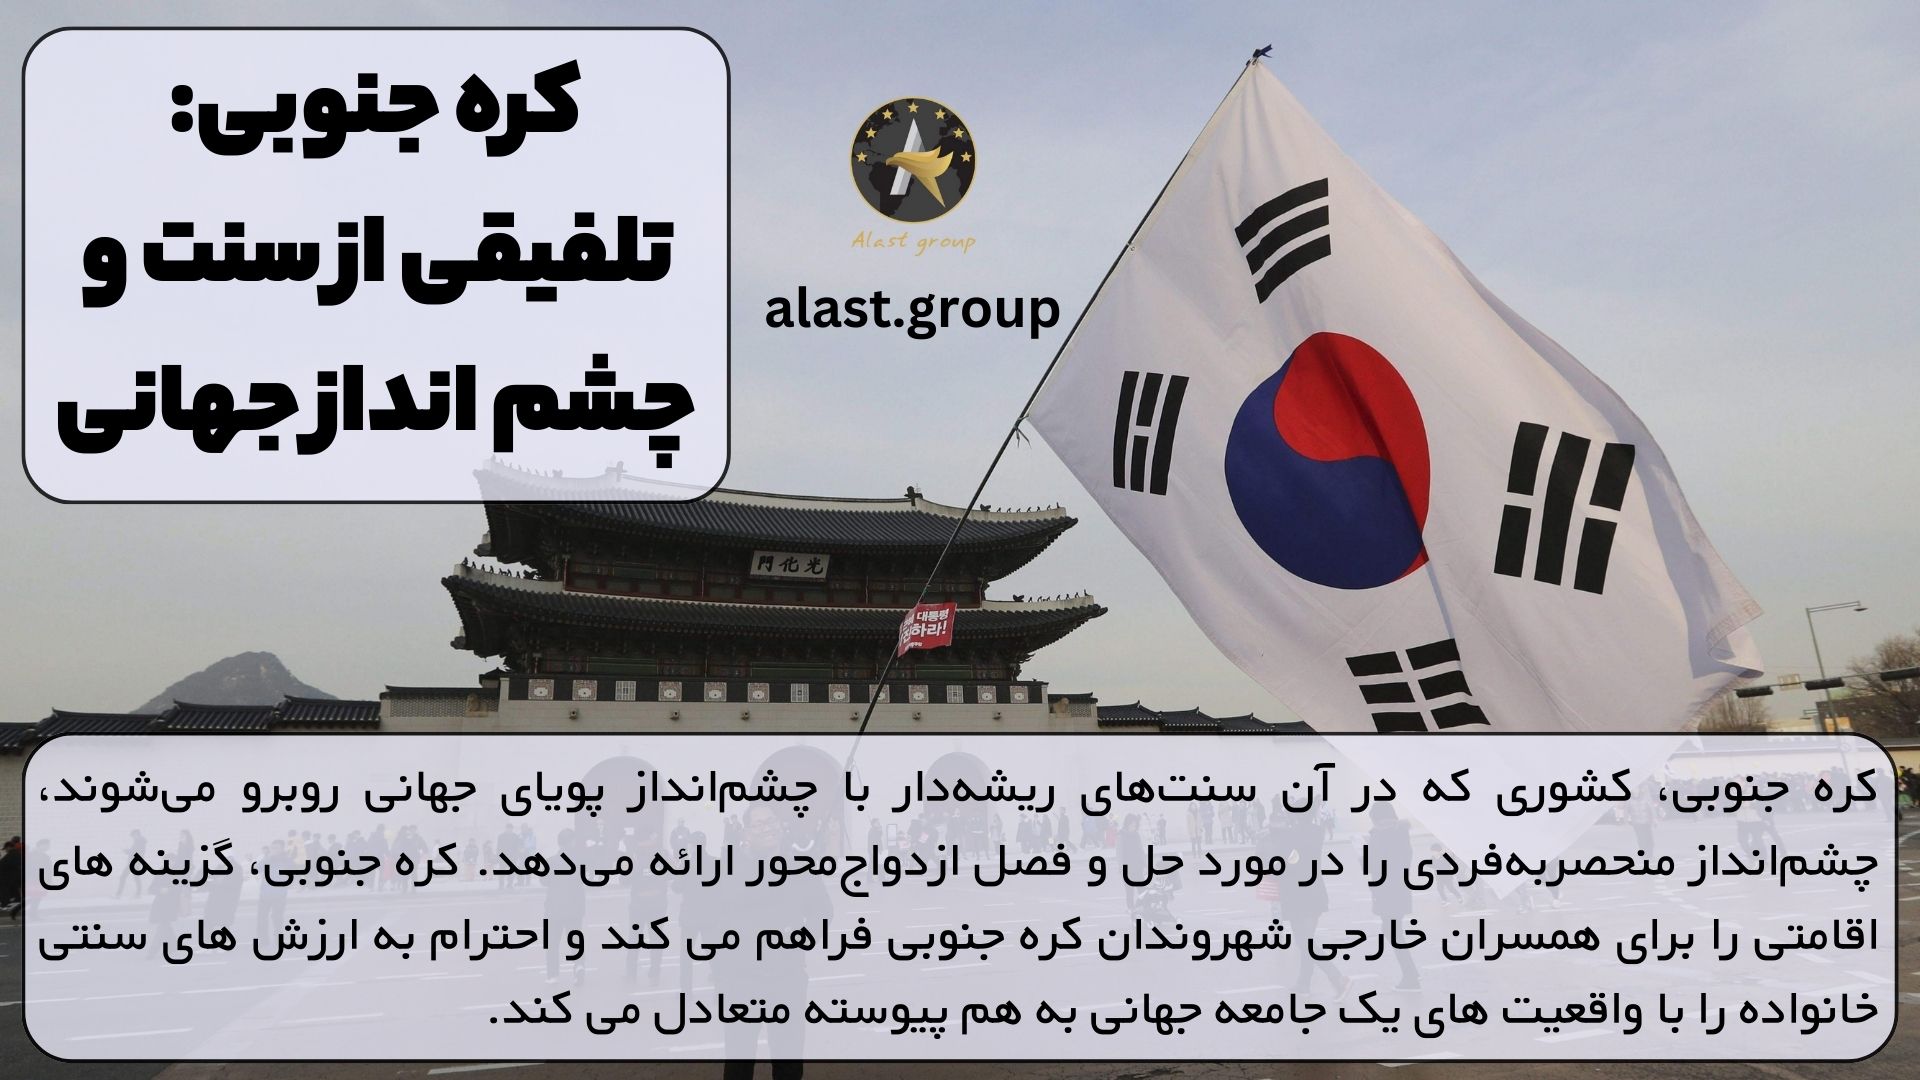 کره جنوبی: تلفیقی از سنت و چشم انداز جهانی